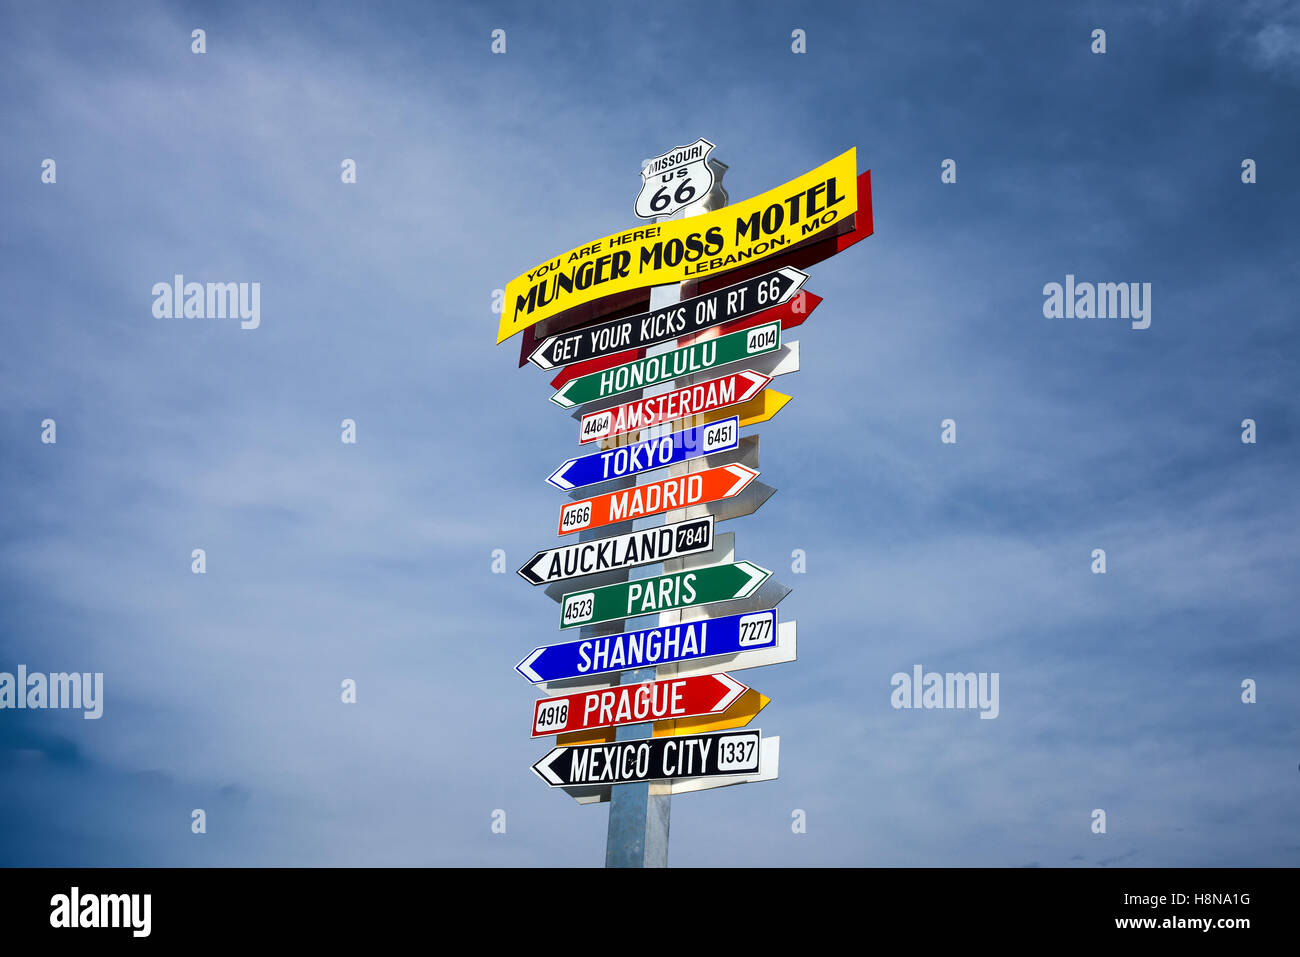 Direzione divertente cartello a Munger Moss Motel con i nomi di città famose in tutto il mondo Foto Stock